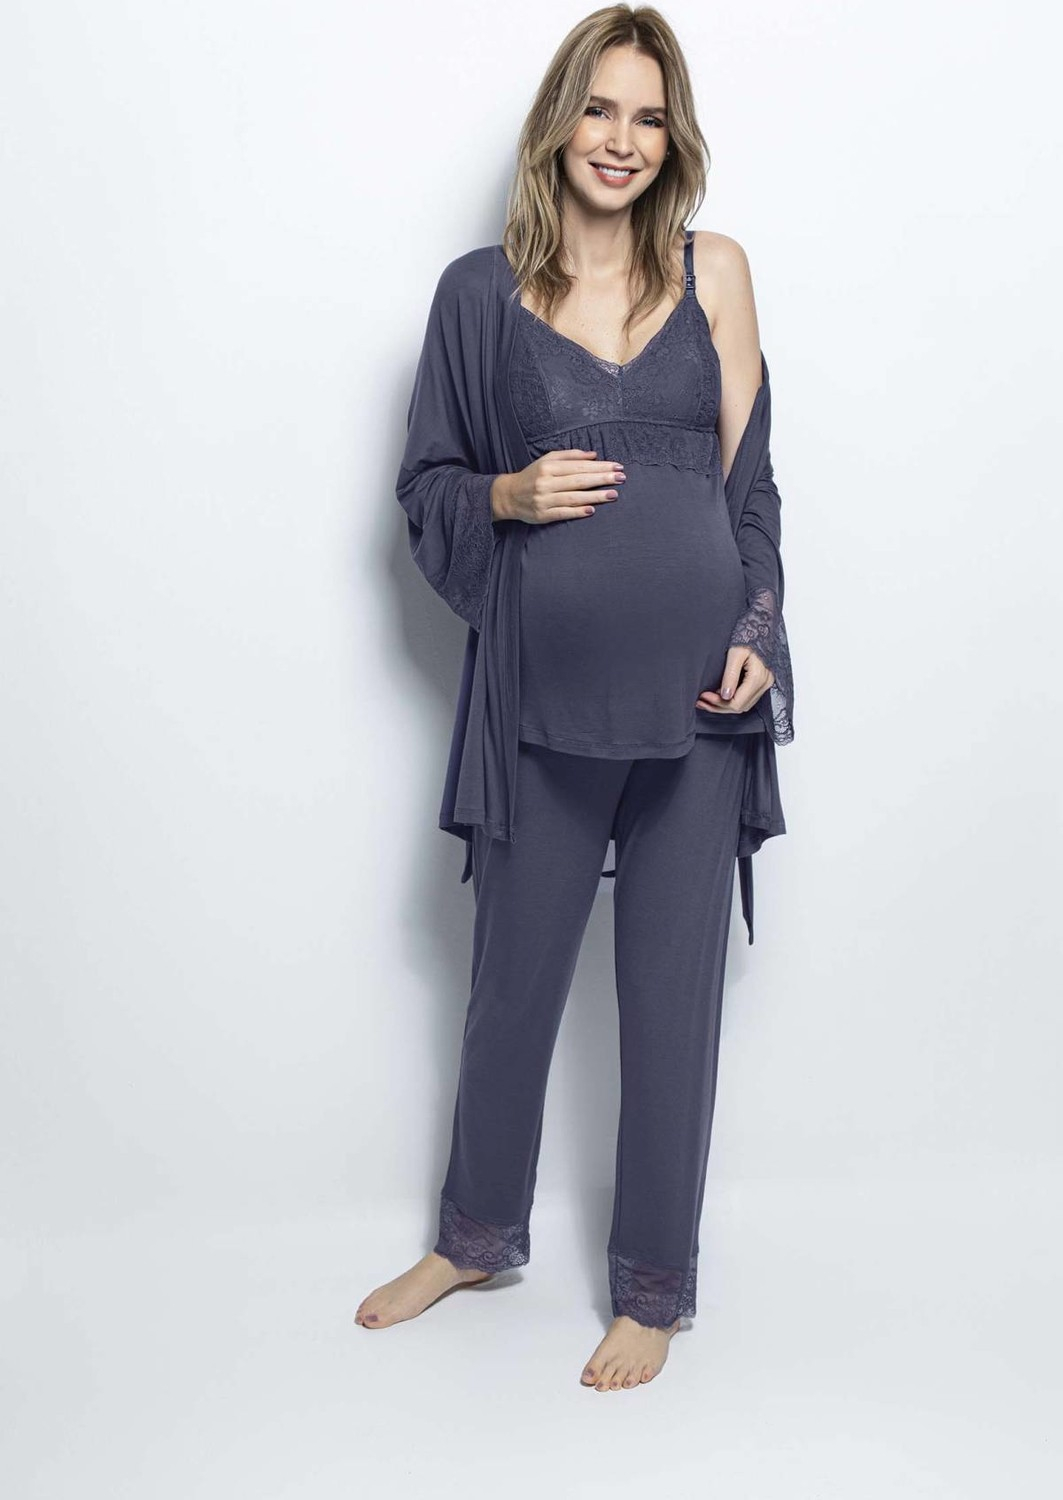 Пижамный комплект Monamise 18432 для беременных после родов - Темно-синий